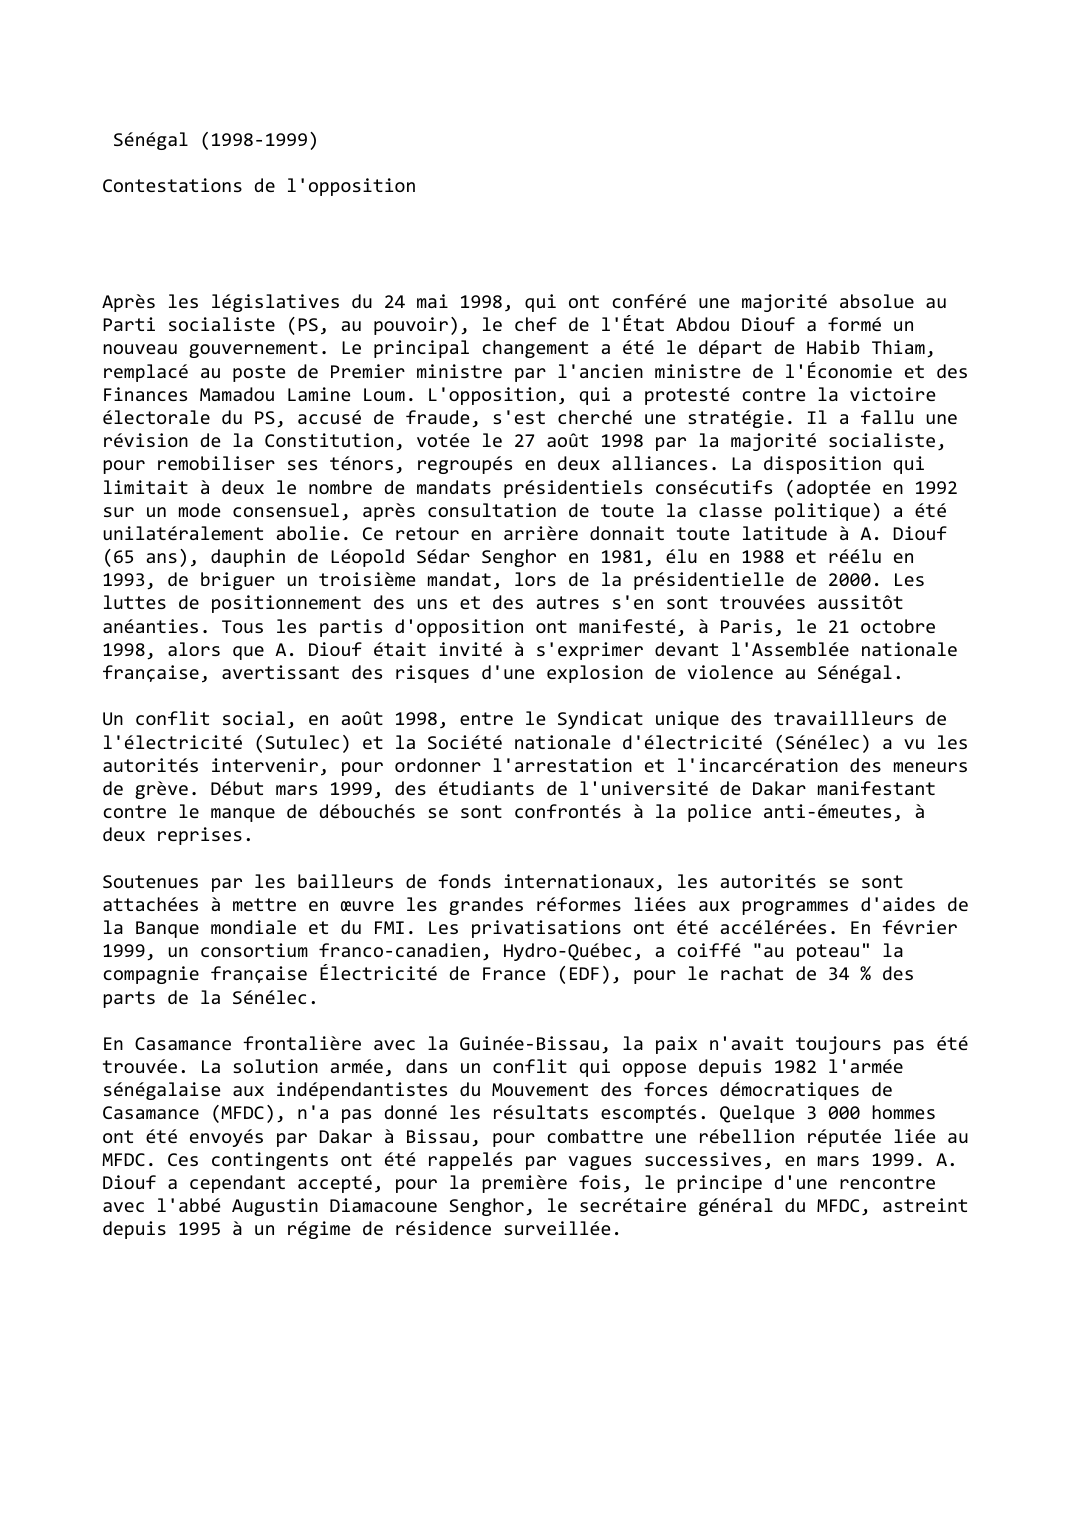 Prévisualisation du document Sénégal (1998-1999)

Contestations de l'opposition